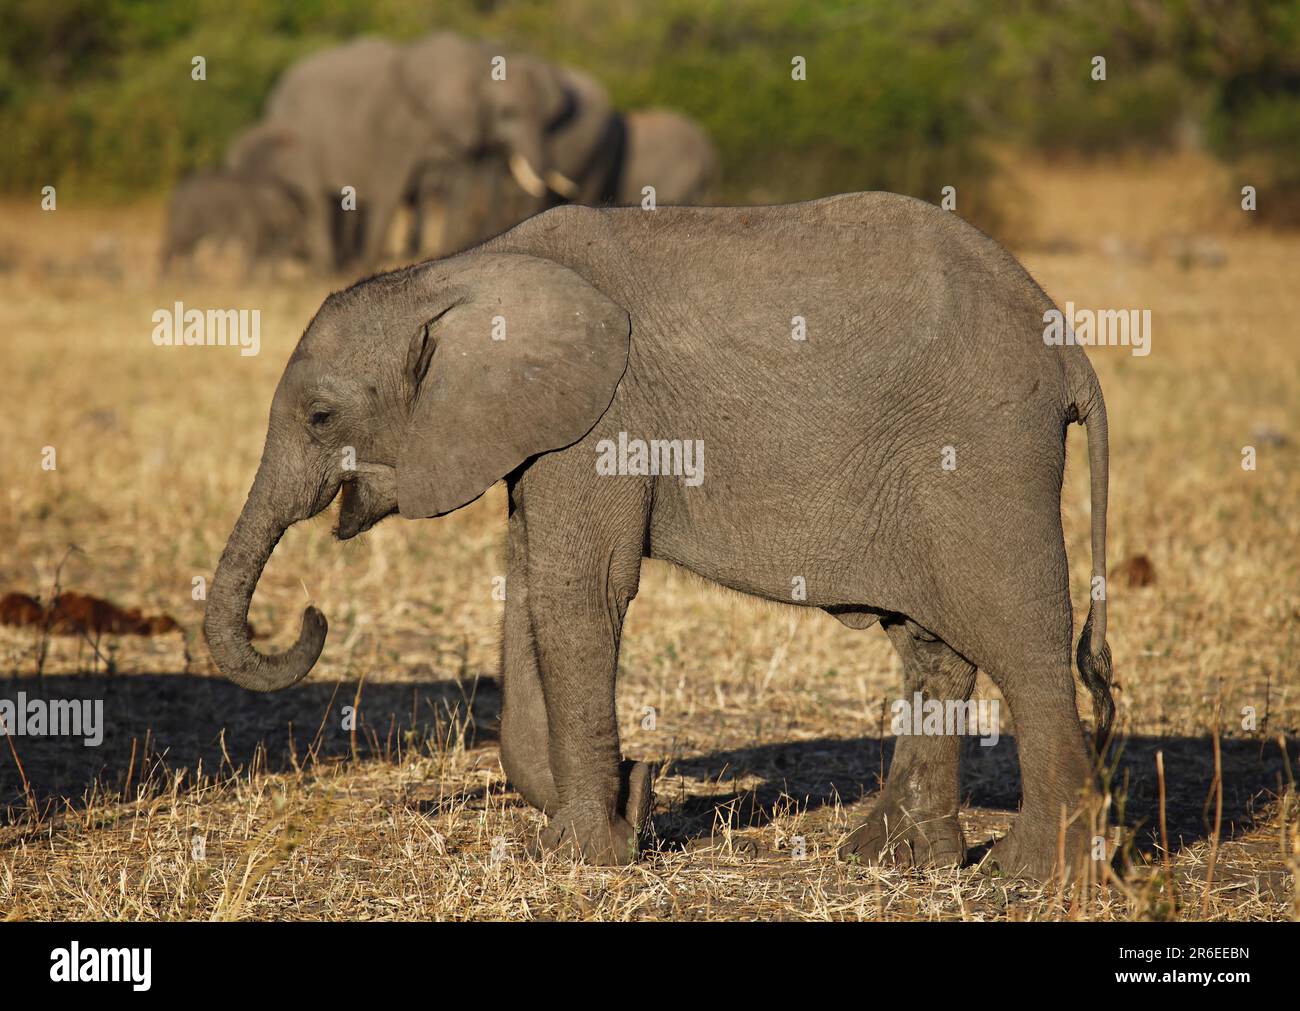 Young elephant, Chobe National Park, Botswana, young elephant, Chobe, Botswana Stock Photo